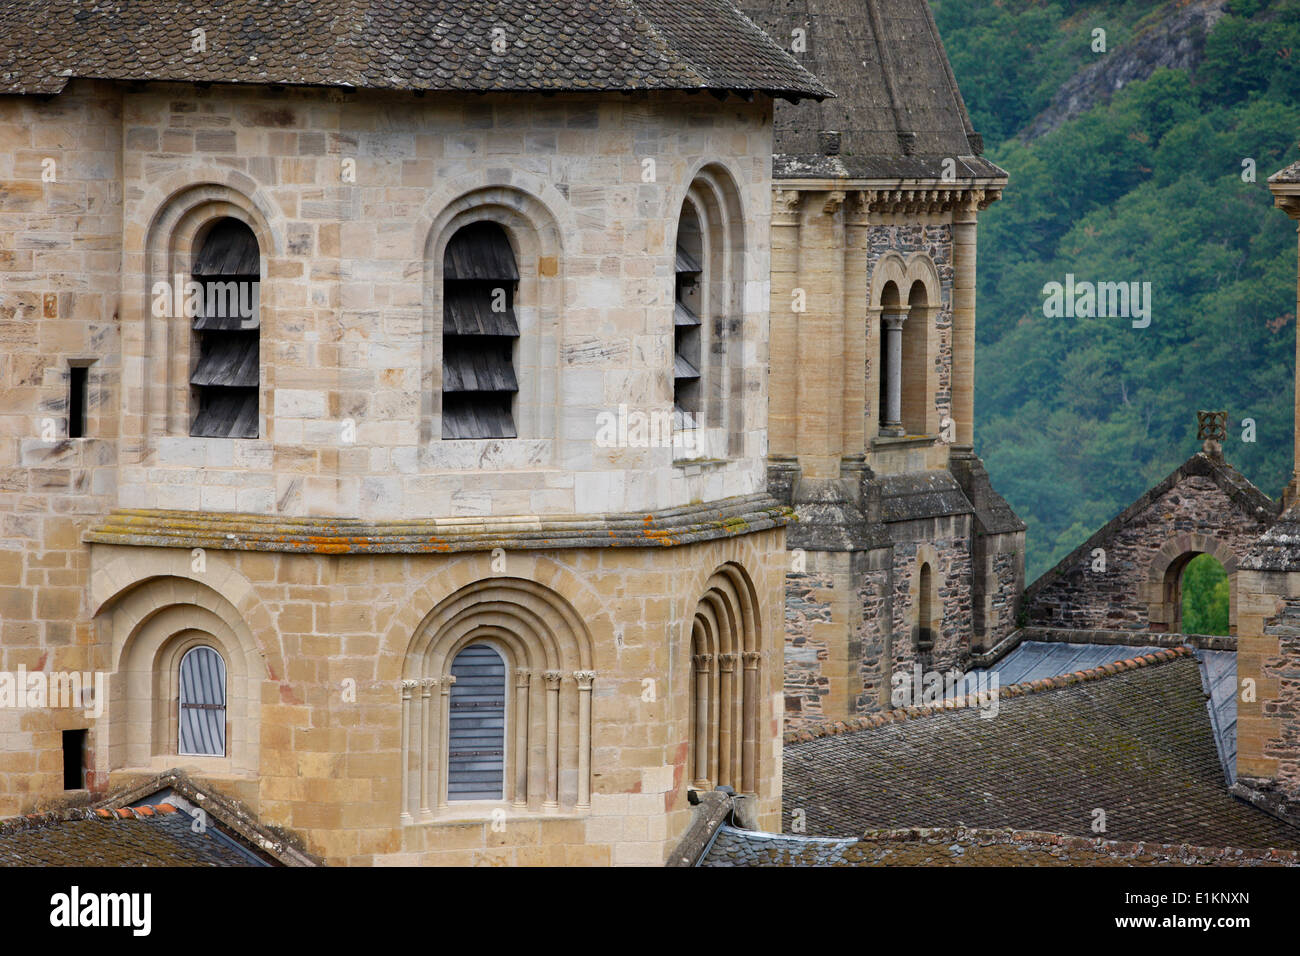 Sainte Foy chiesa abbaziale dŽcorŽe par les vitraux de Pierre Soulages. Foto Stock